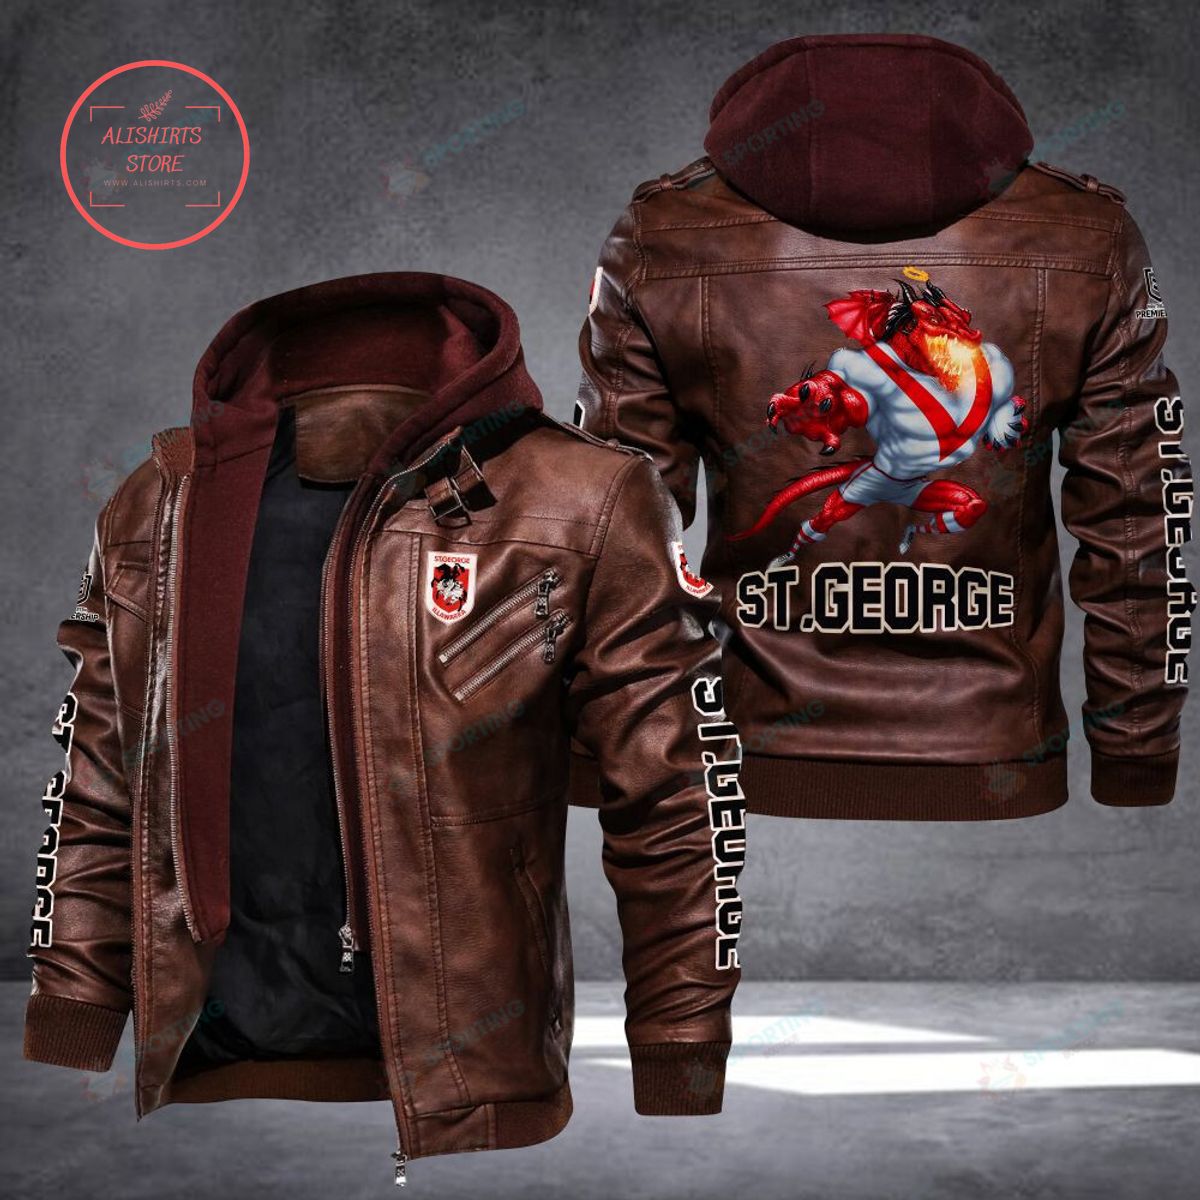 NRL St. George Illawarra Dragons Mascot Leather Jacket Hooded Fleece For Fan